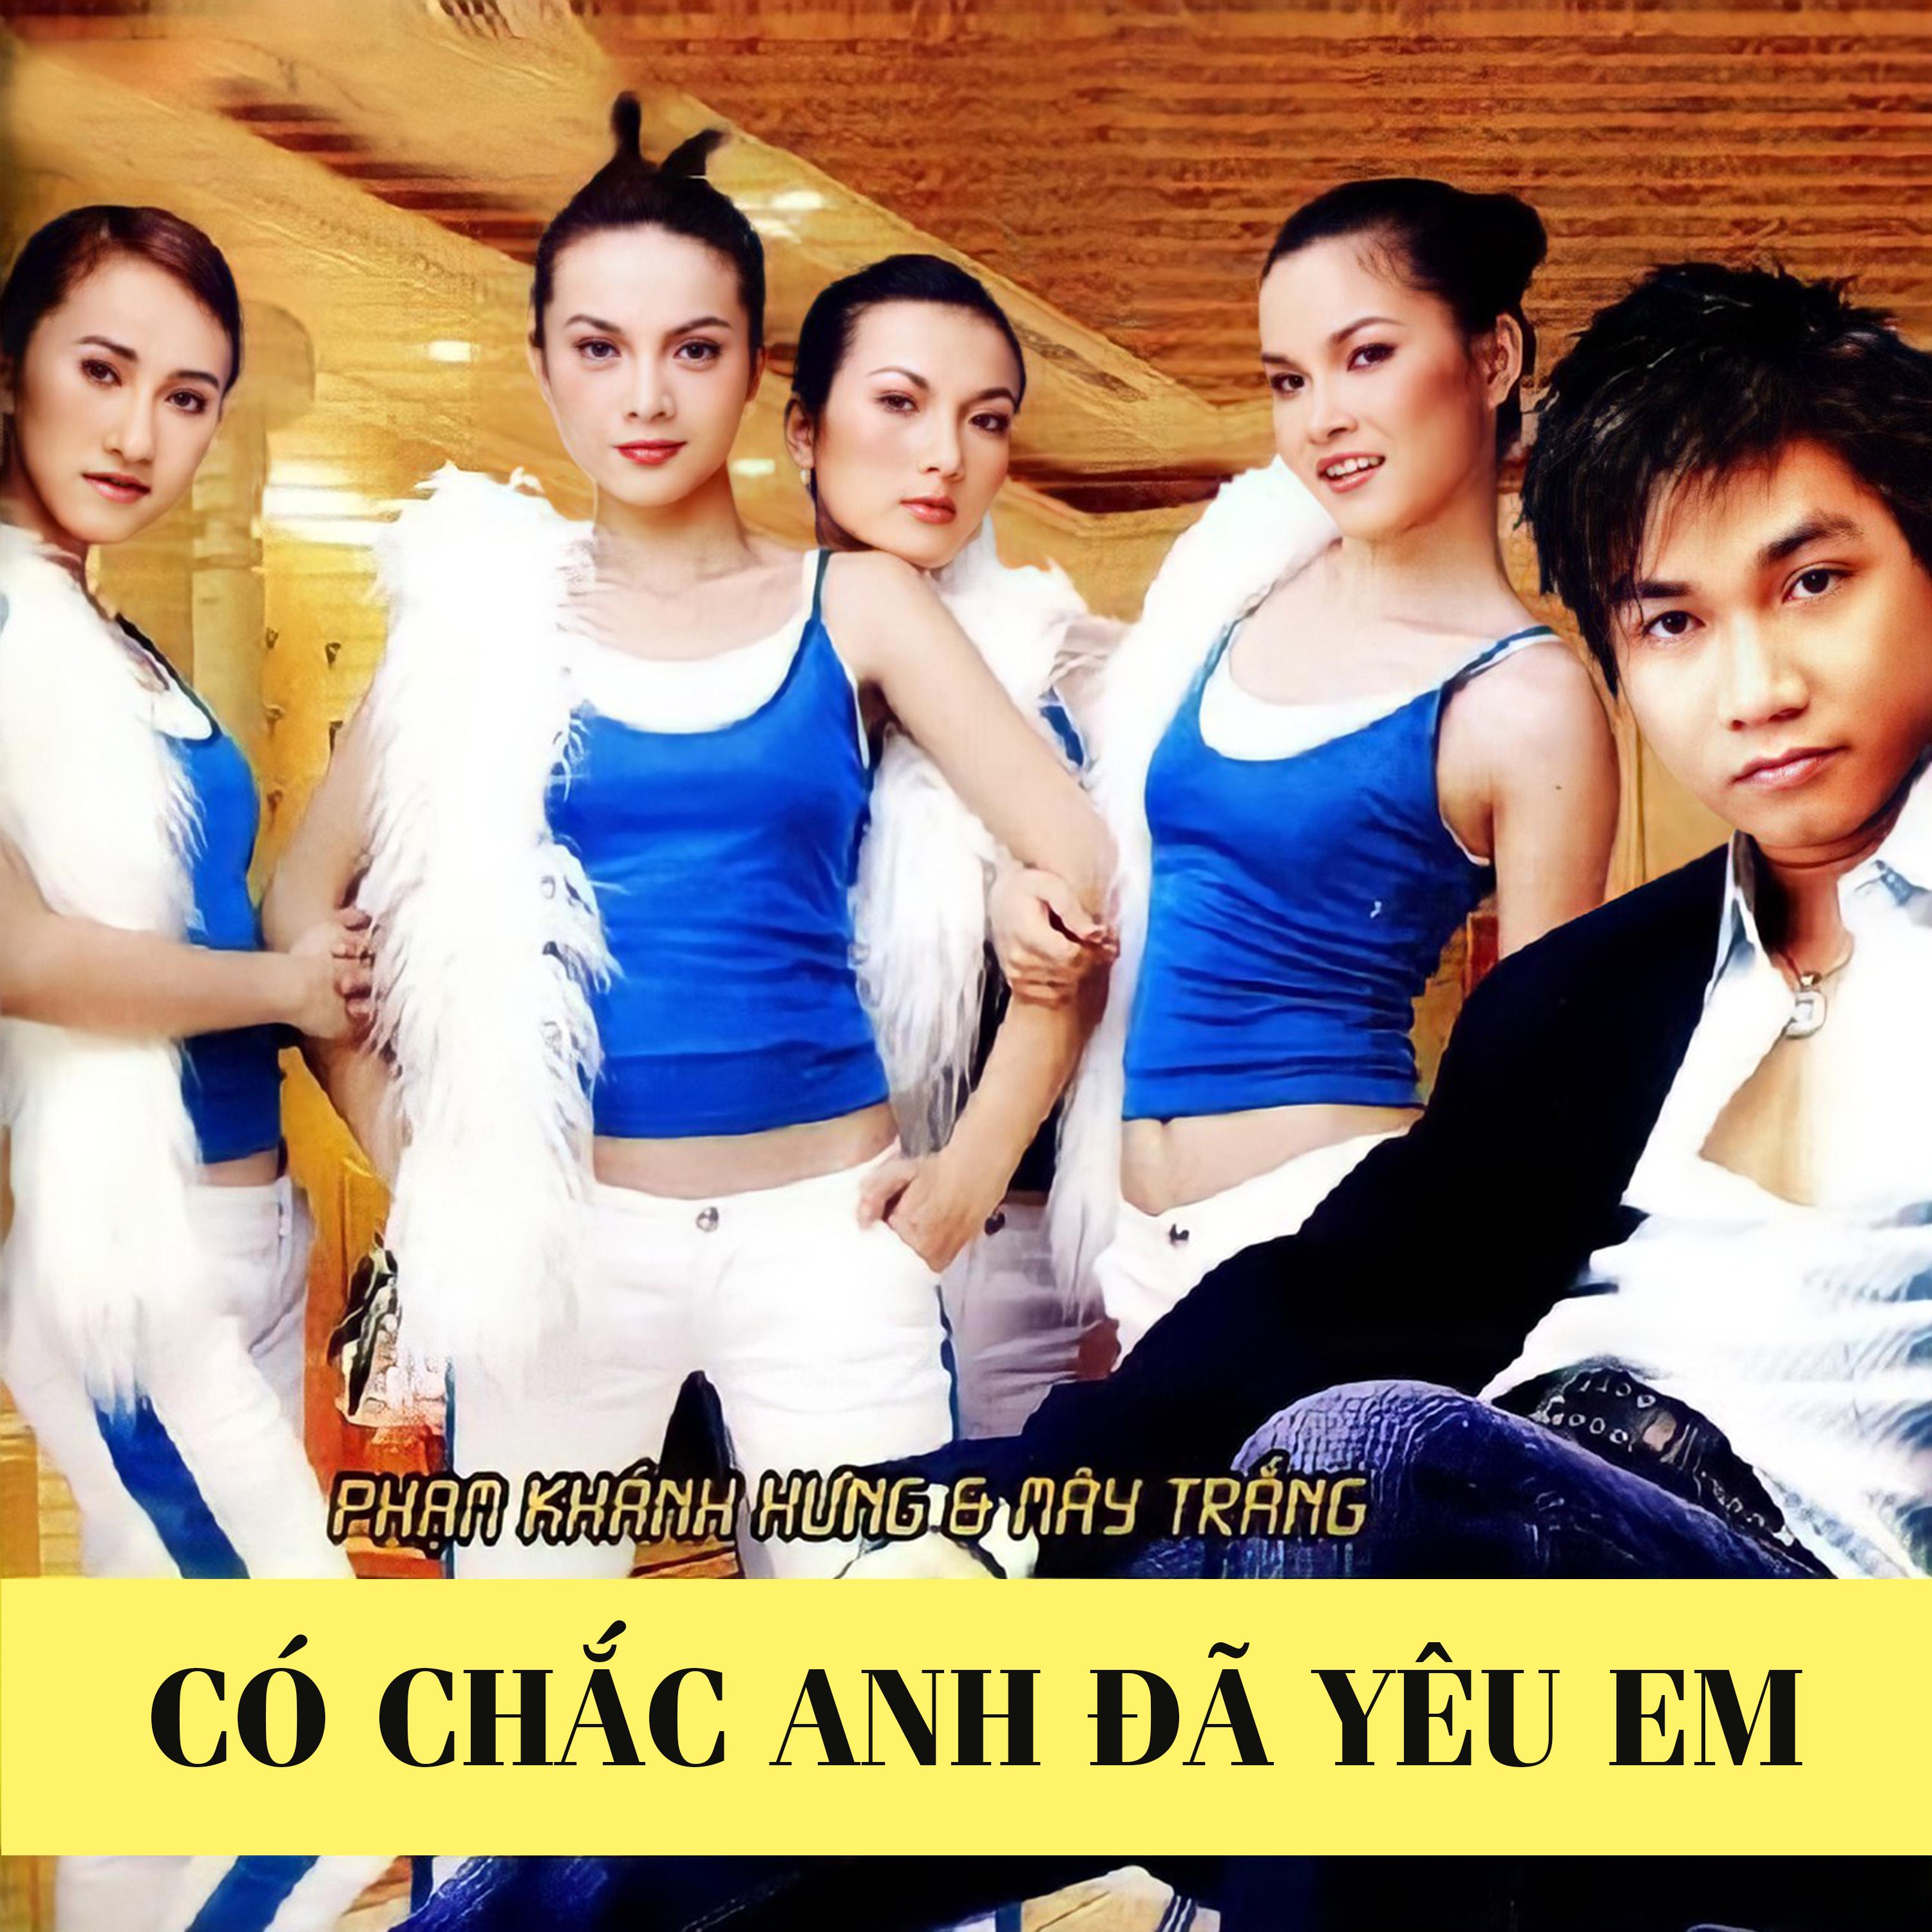 Mây Trắng - Có Chắc Anh Đã Yêu Em (feat. Phạm Khánh Hưng)